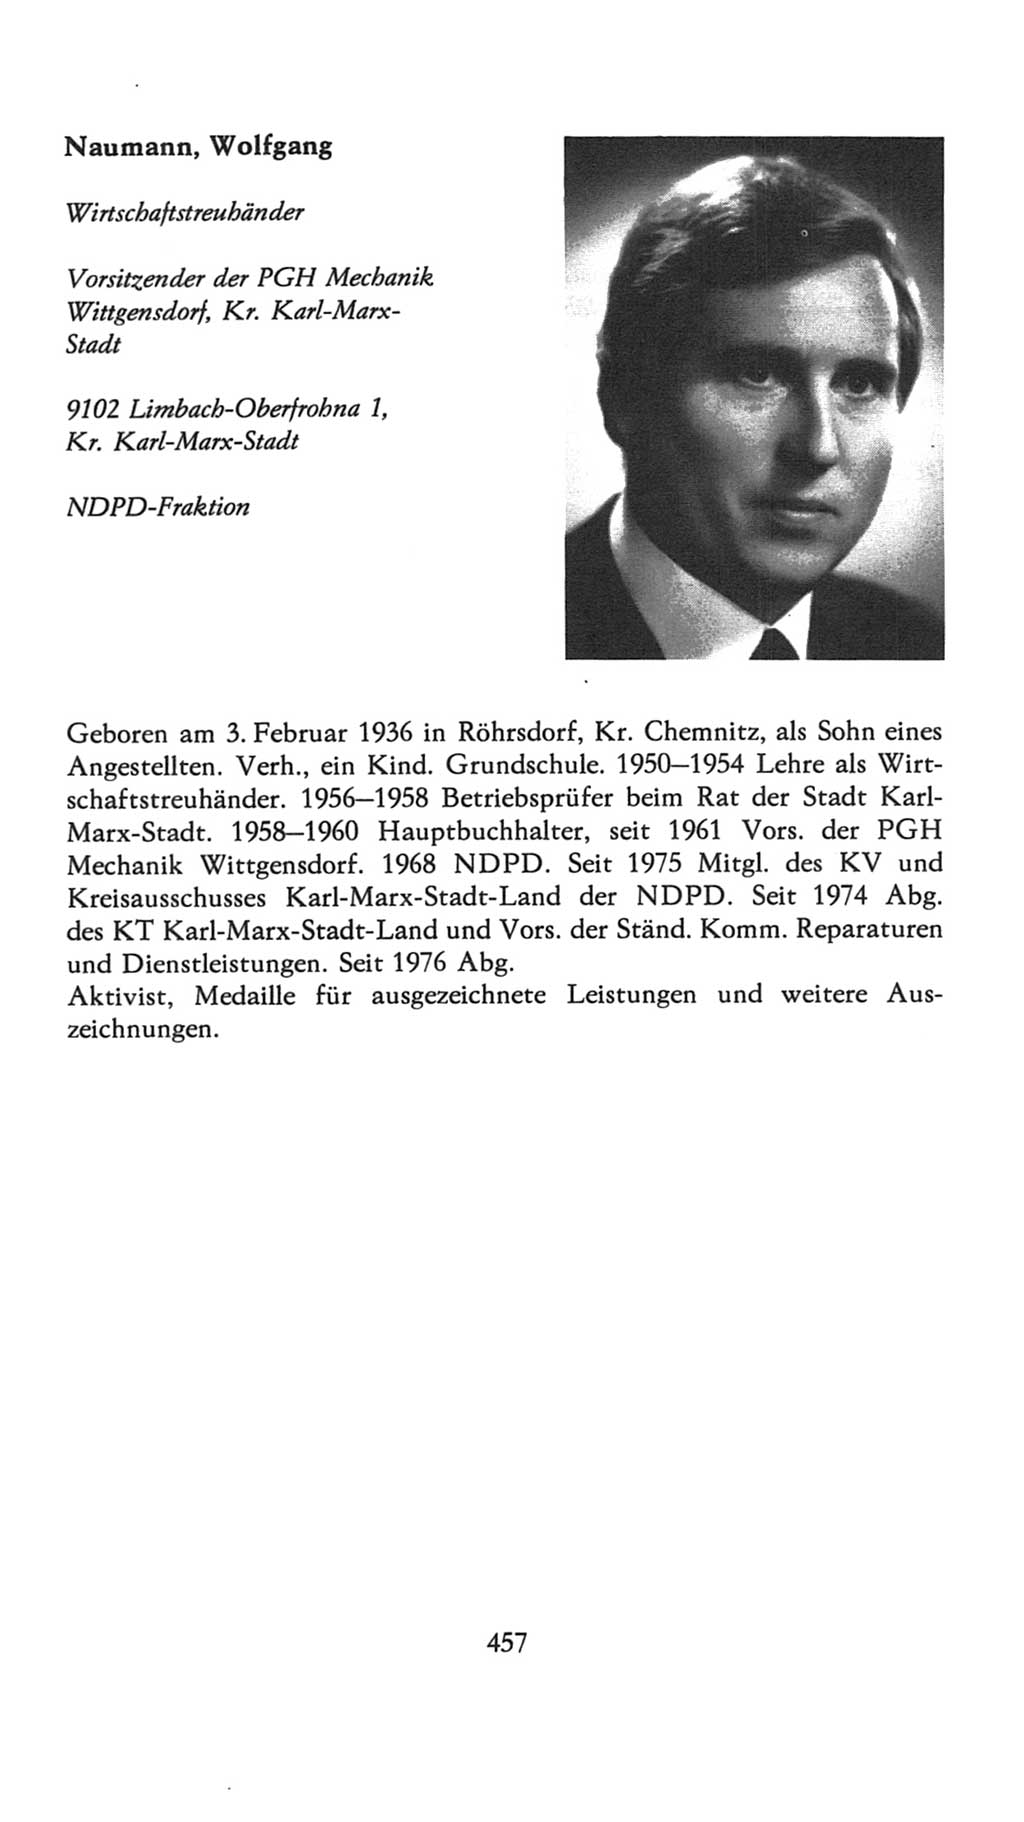 Volkskammer (VK) der Deutschen Demokratischen Republik (DDR), 7. Wahlperiode 1976-1981, Seite 457 (VK. DDR 7. WP. 1976-1981, S. 457)